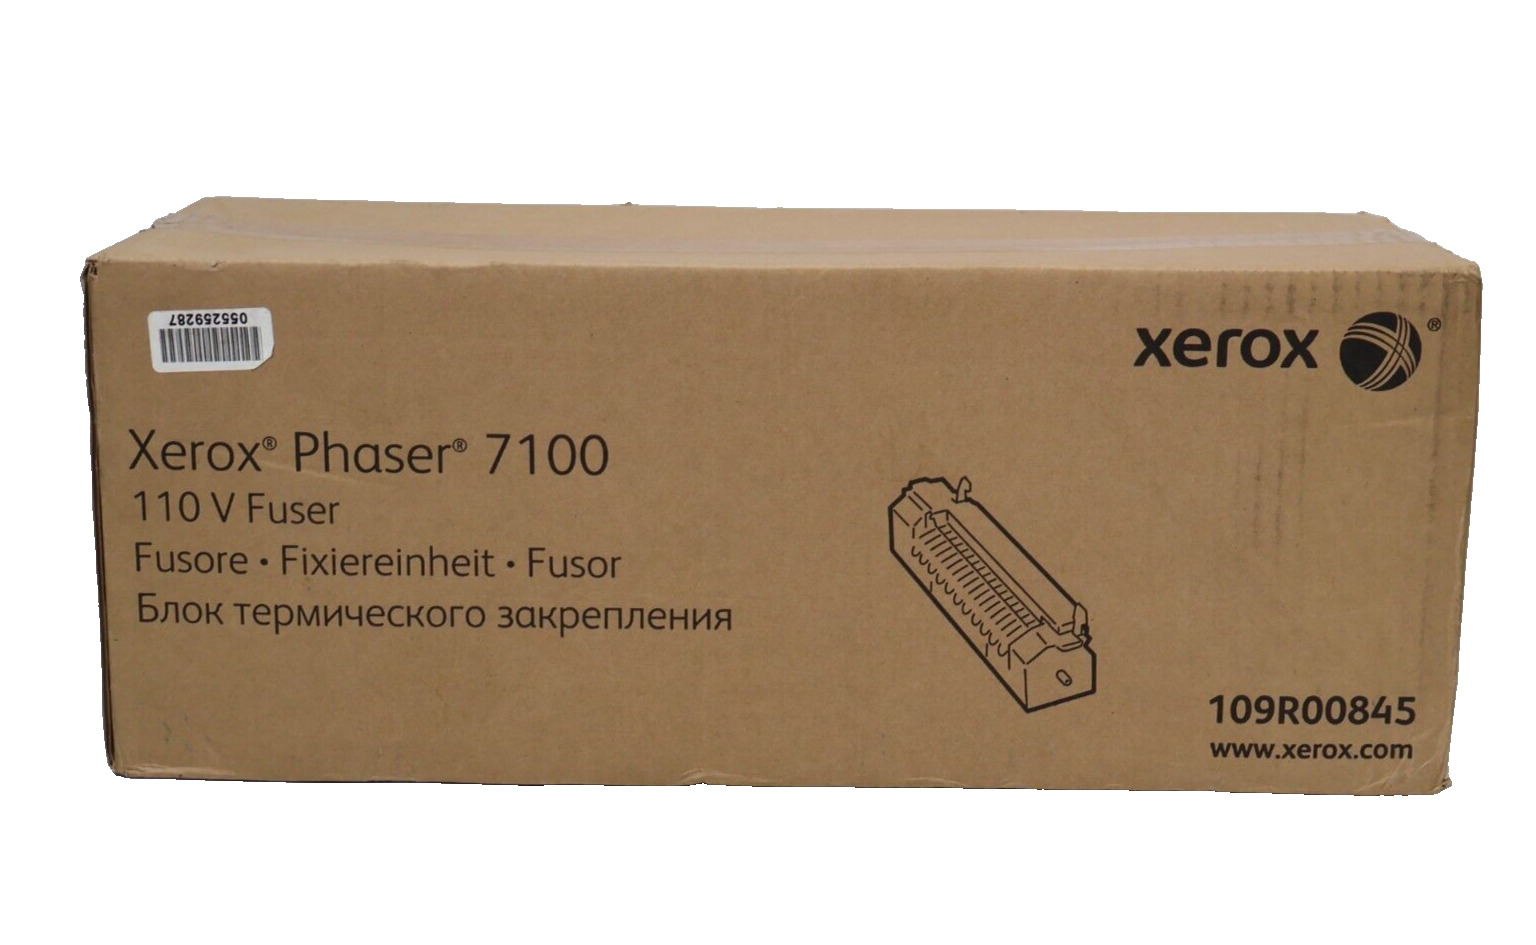 Genuine OEM Xerox Phaser 7100 Fuser Unit 110V 109R00845 New Sealed Ships Fast